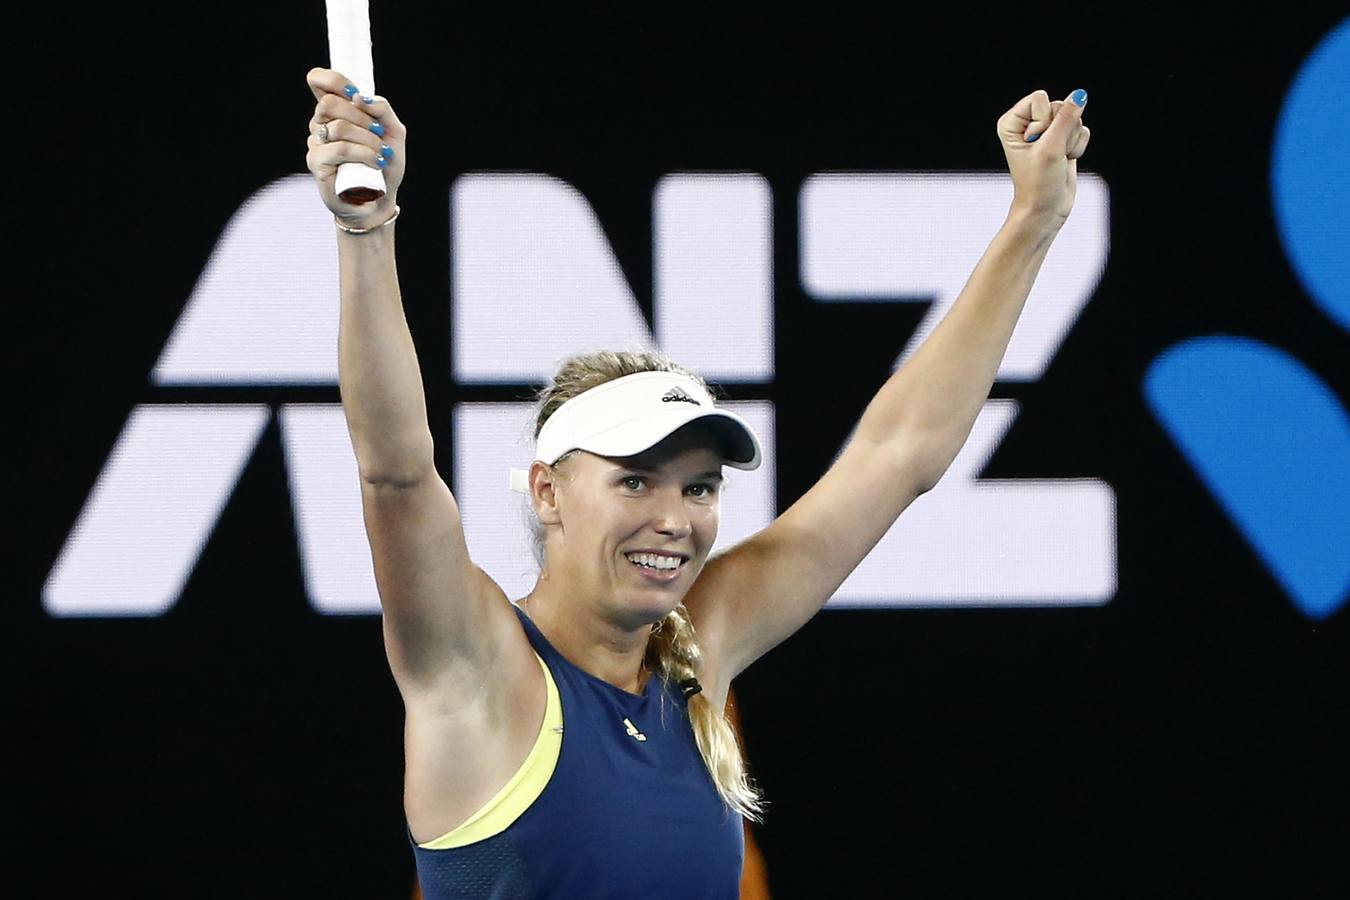 Carla SUárez cayó derrotada ante Caroline Wozniacki (6-0, 6-7 y 6-2) en los cuartos de final del Abierto de Australia. 